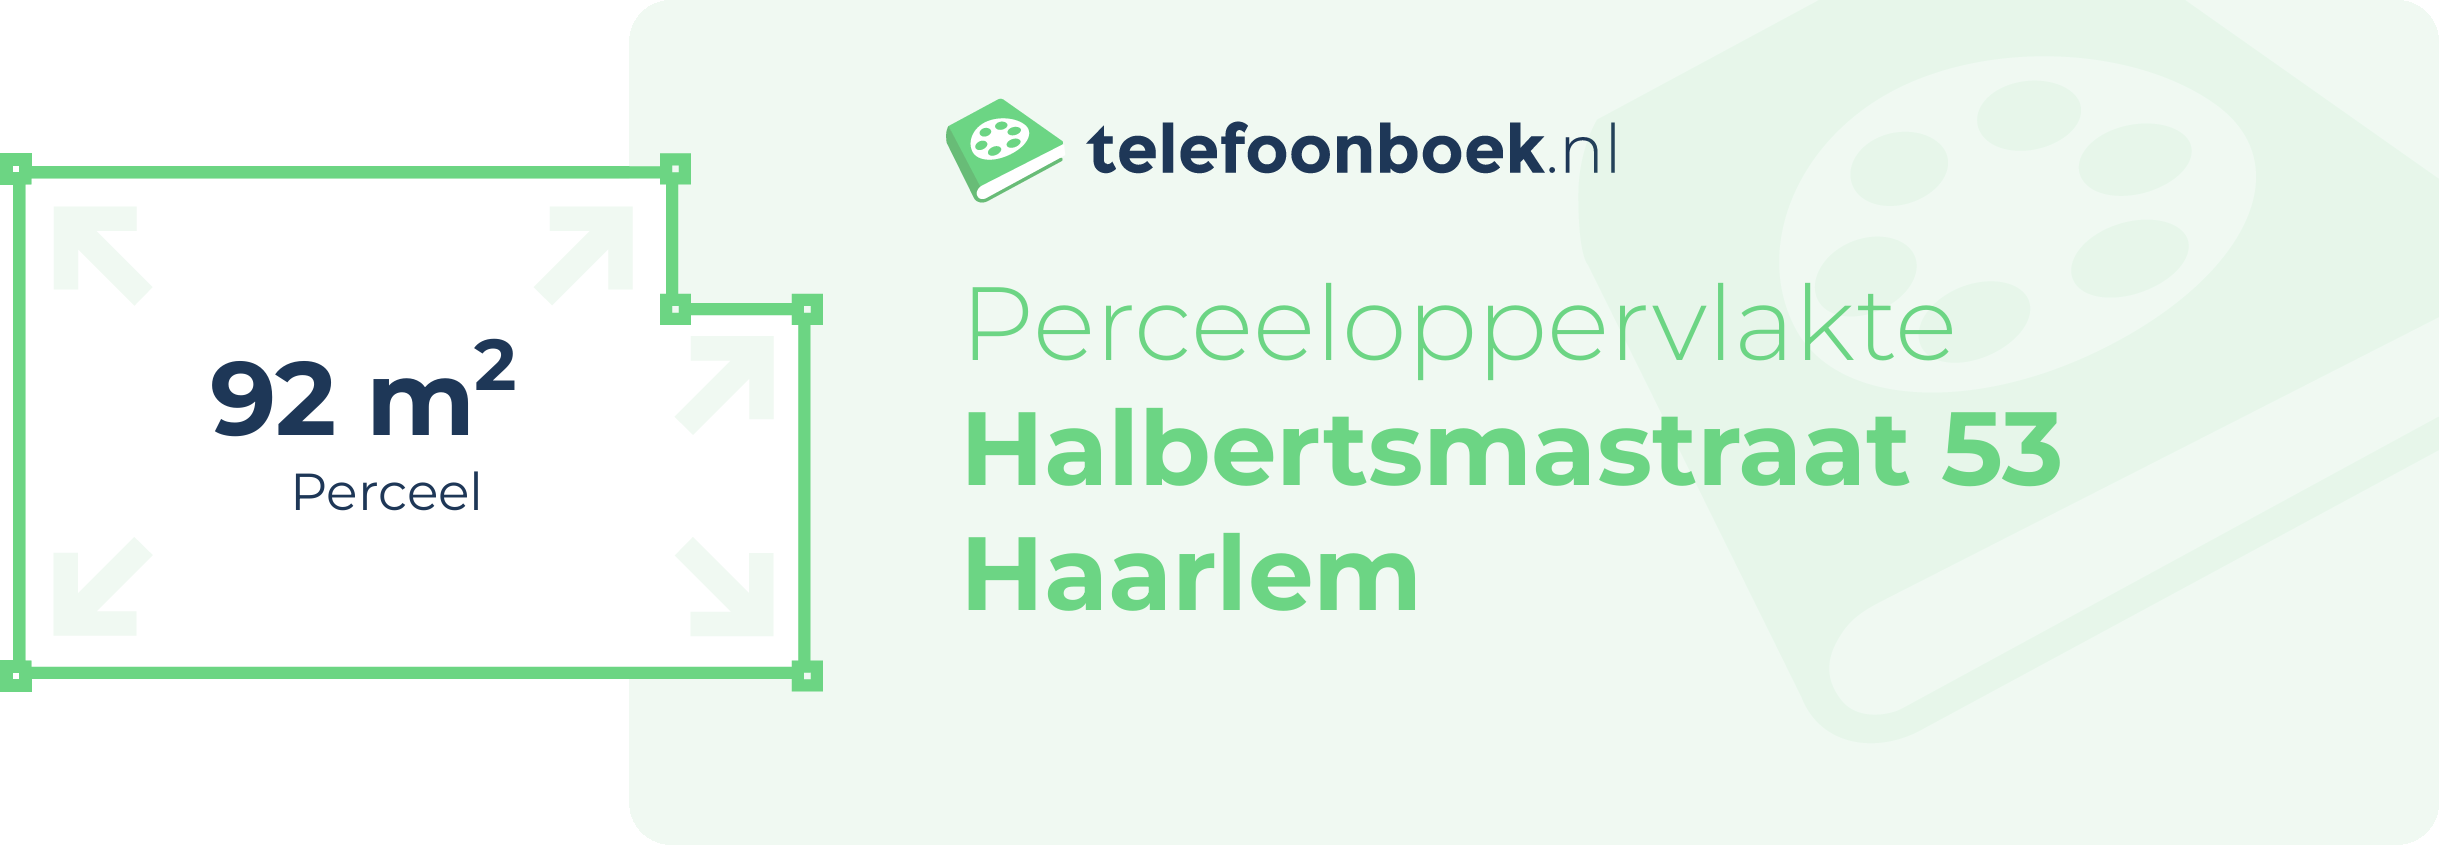 Perceeloppervlakte Halbertsmastraat 53 Haarlem